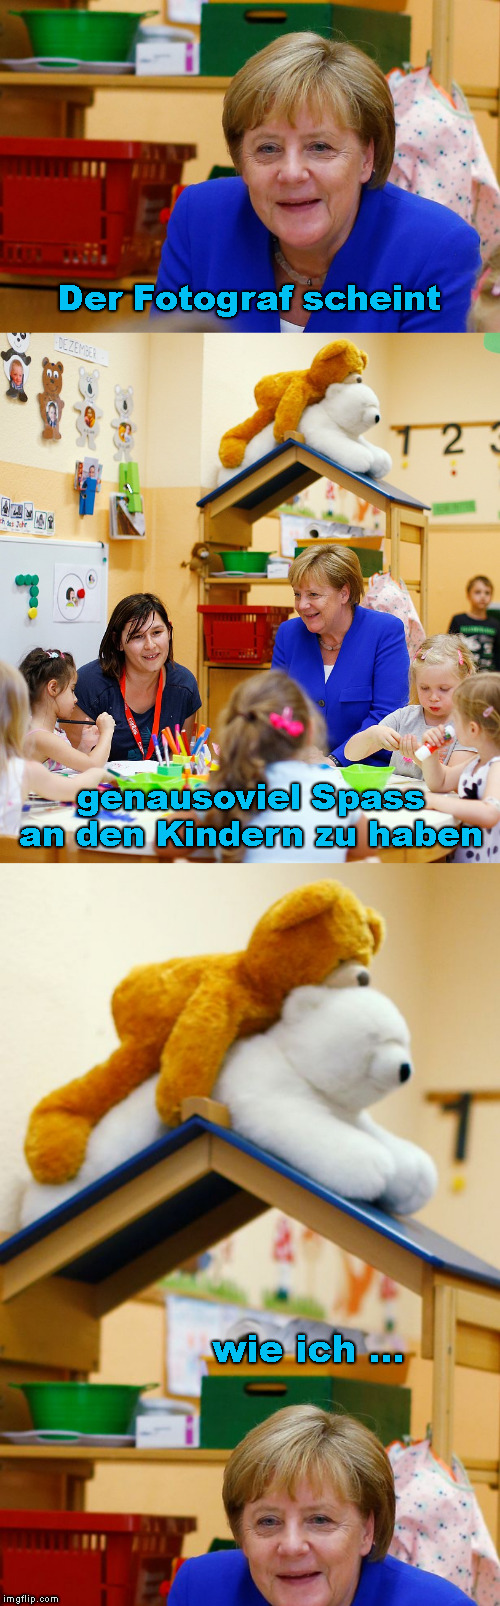 Kindergarten | Der Fotograf scheint; genausoviel Spass an den Kindern zu haben; wie ich ... | image tagged in memes,funny,angela merkel | made w/ Imgflip meme maker